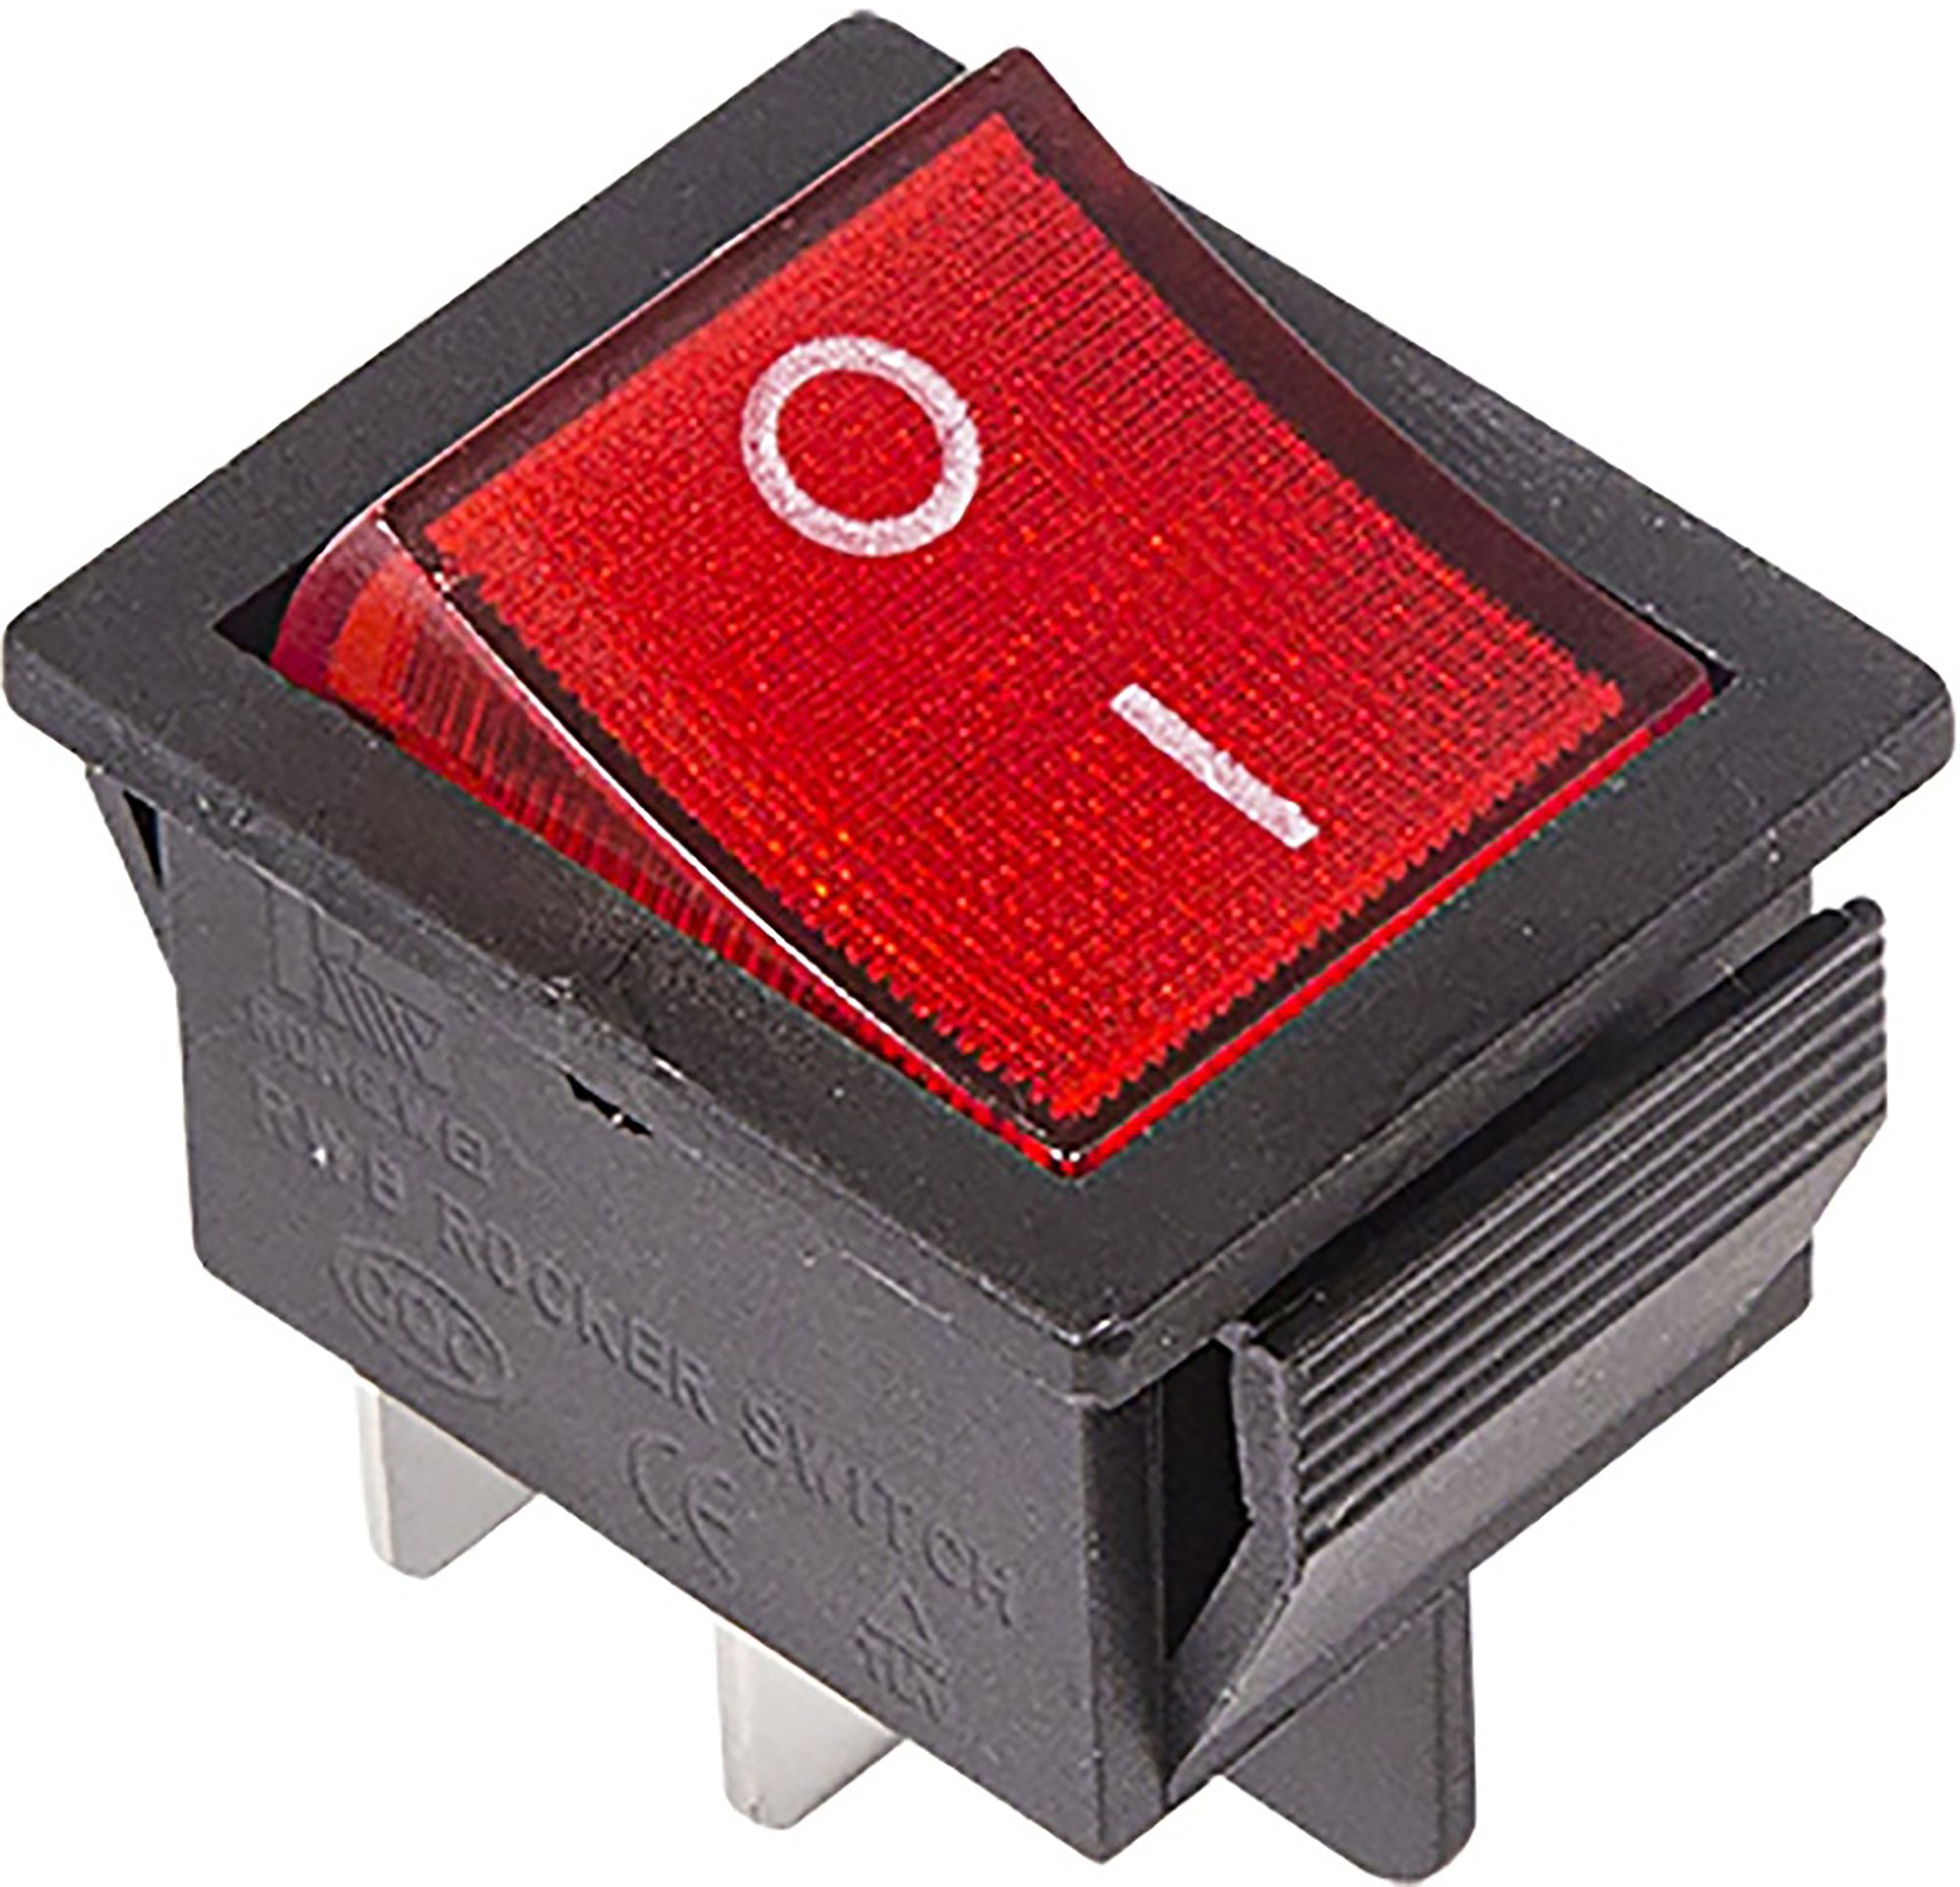 Клавиши включения выключения. Выключатель клавишный 250v 16а 4с on-off красный с подсветкой Rexant. Выключатель клавишный 250v 15а (4с) (on)-off черный б/фикс Rexant. 36-2330, Выключатель клавишный 250v 16а (4с) on-off красный с подсветкой. Выключатель клавишный 250v 15а (6с) on-off-on черный с нейтралью.